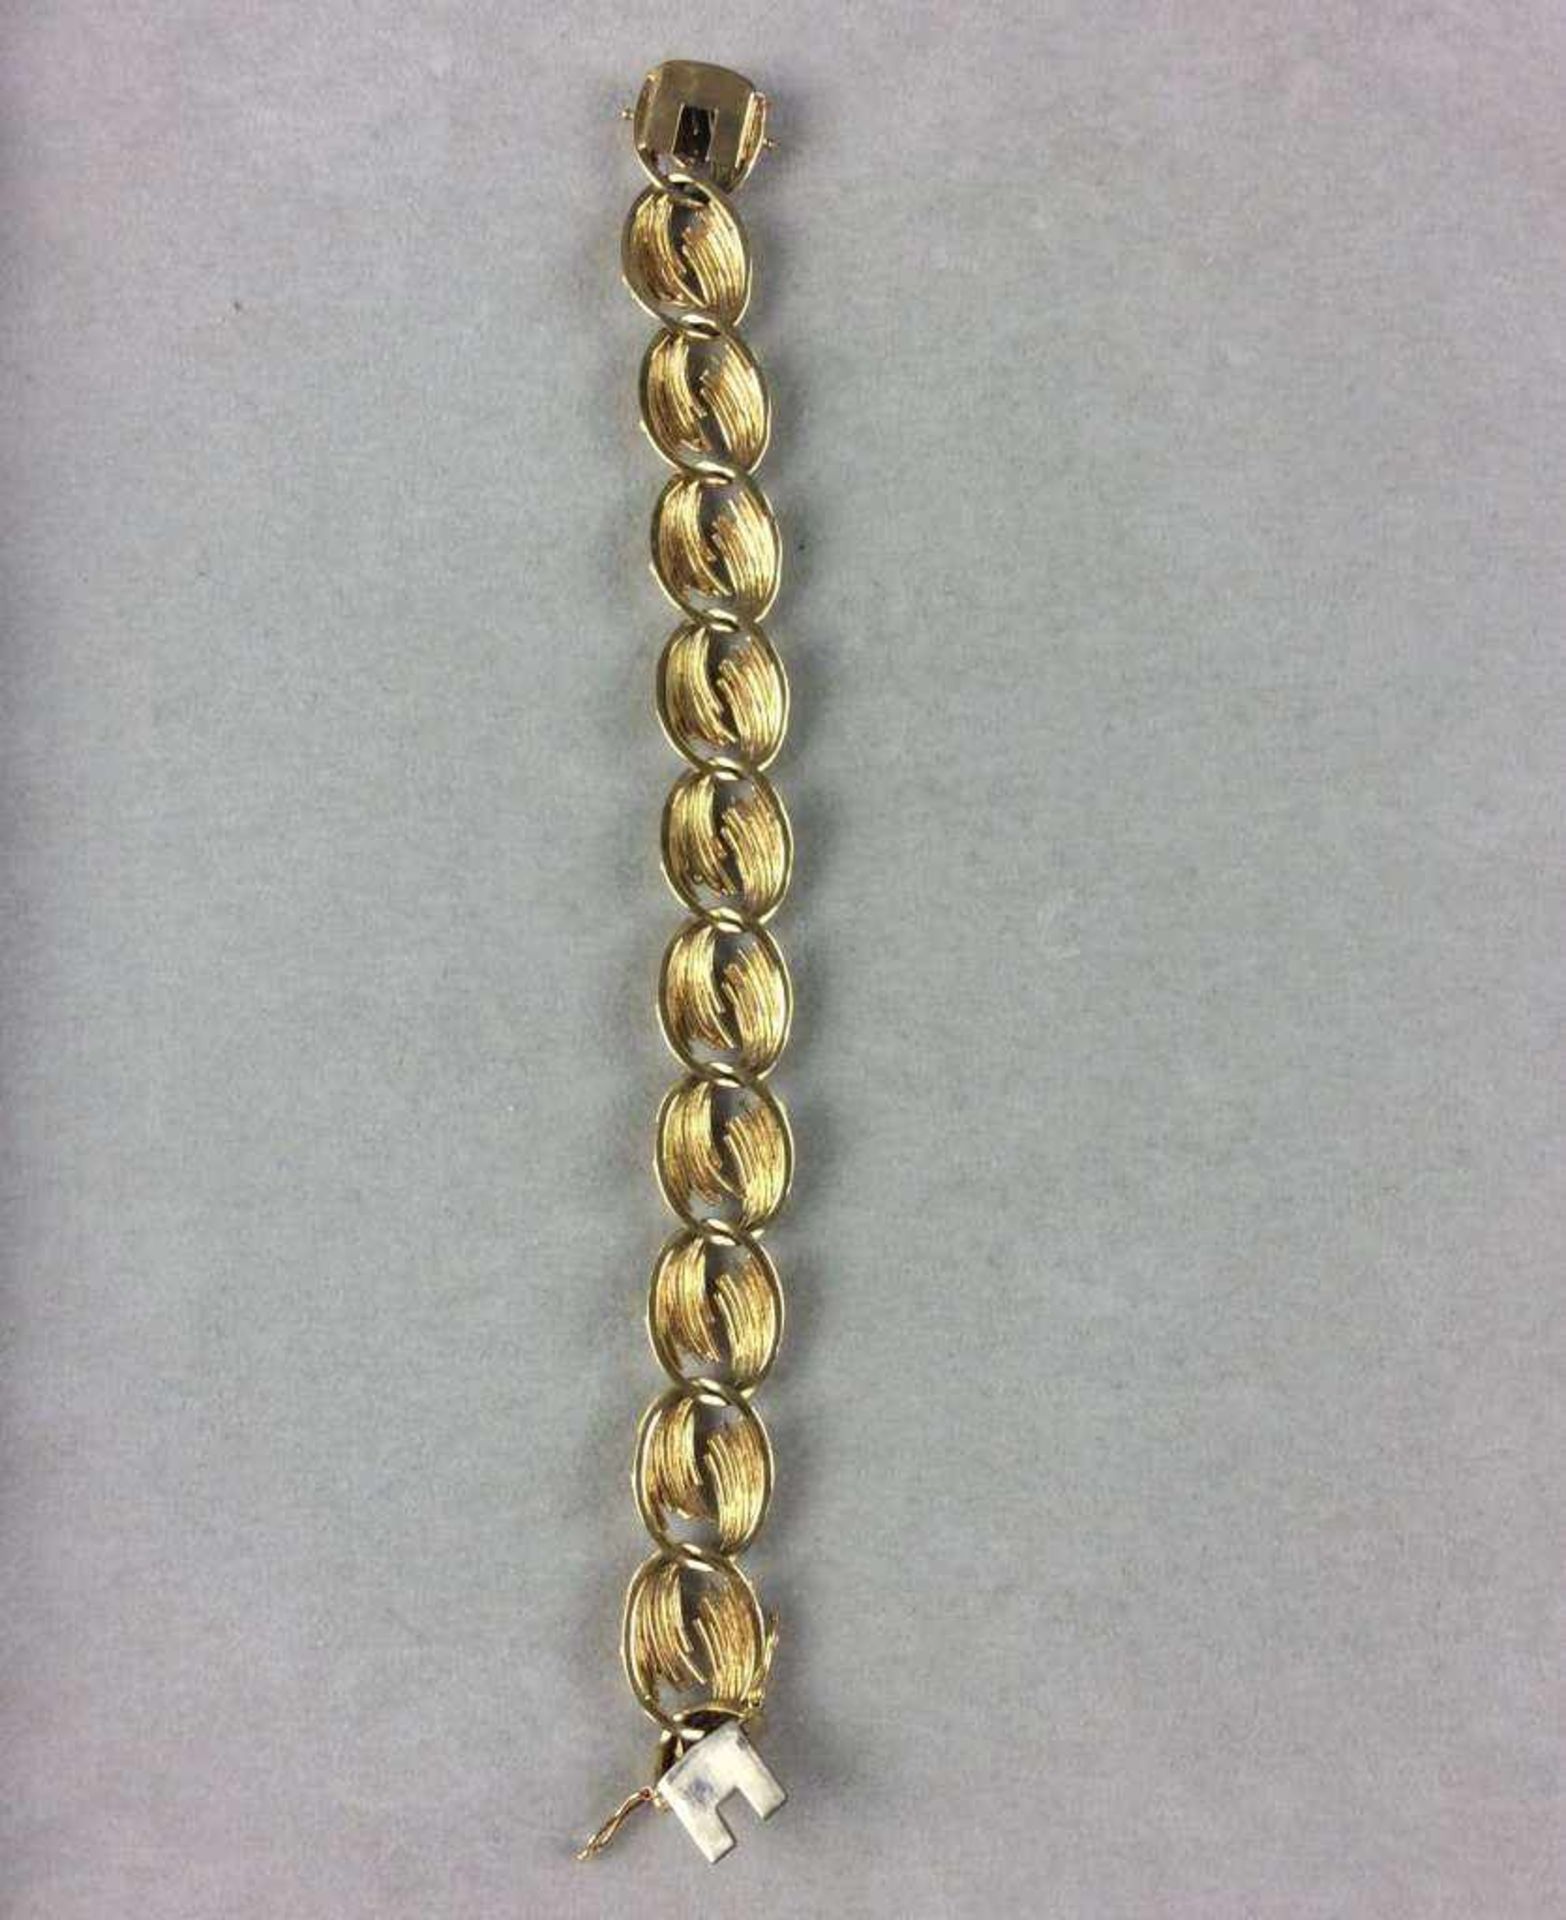 Armband aus 18Kt-Gelbgold (punziert 750), Glieder-Facon, Länge: 19,5 cm, Breite: 1,5 cm, - Bild 2 aus 3